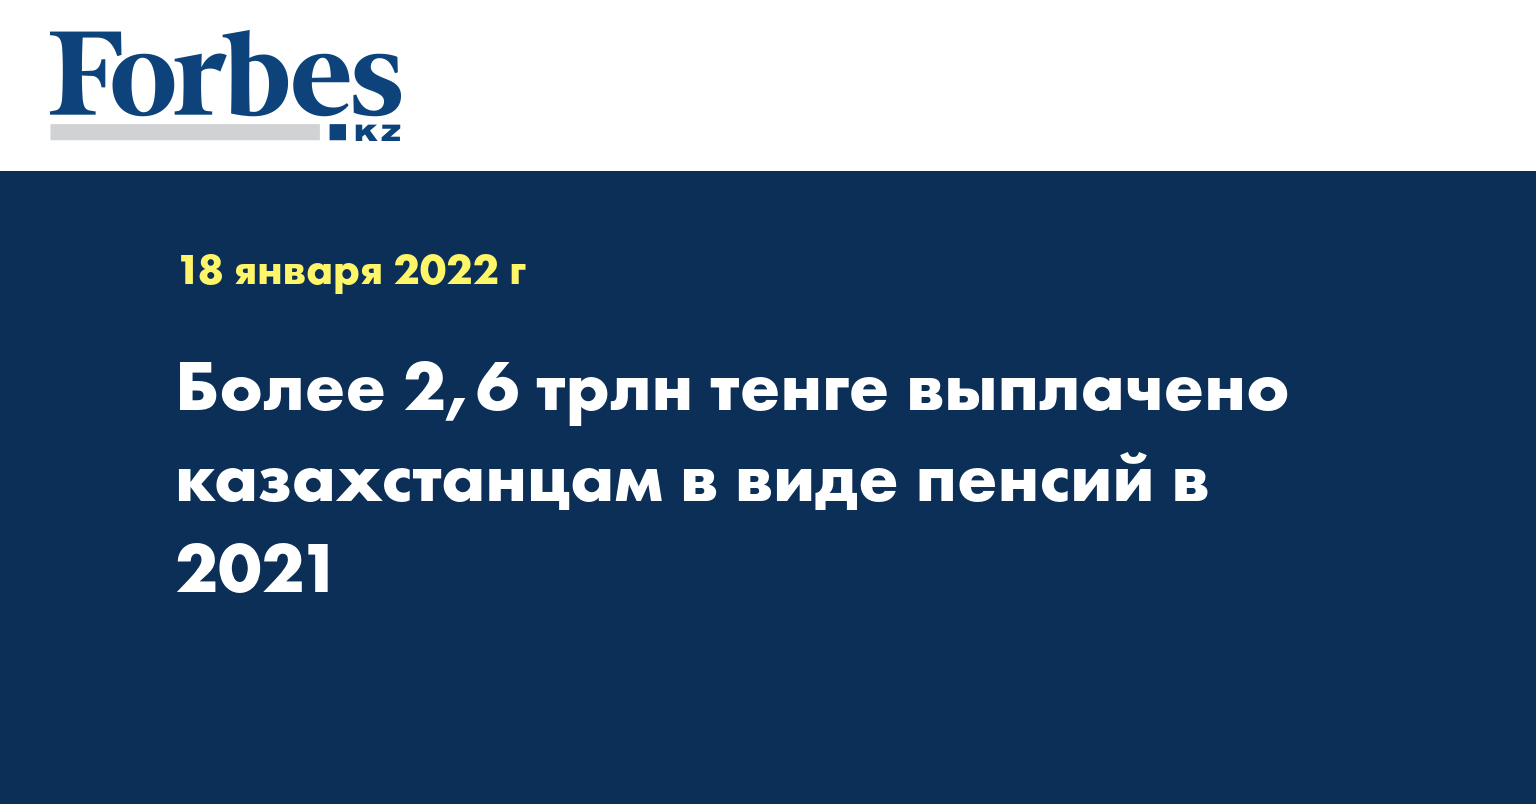 Более 2,6 трлн тенге выплачено казахстанцам в виде пенсий в 2021 